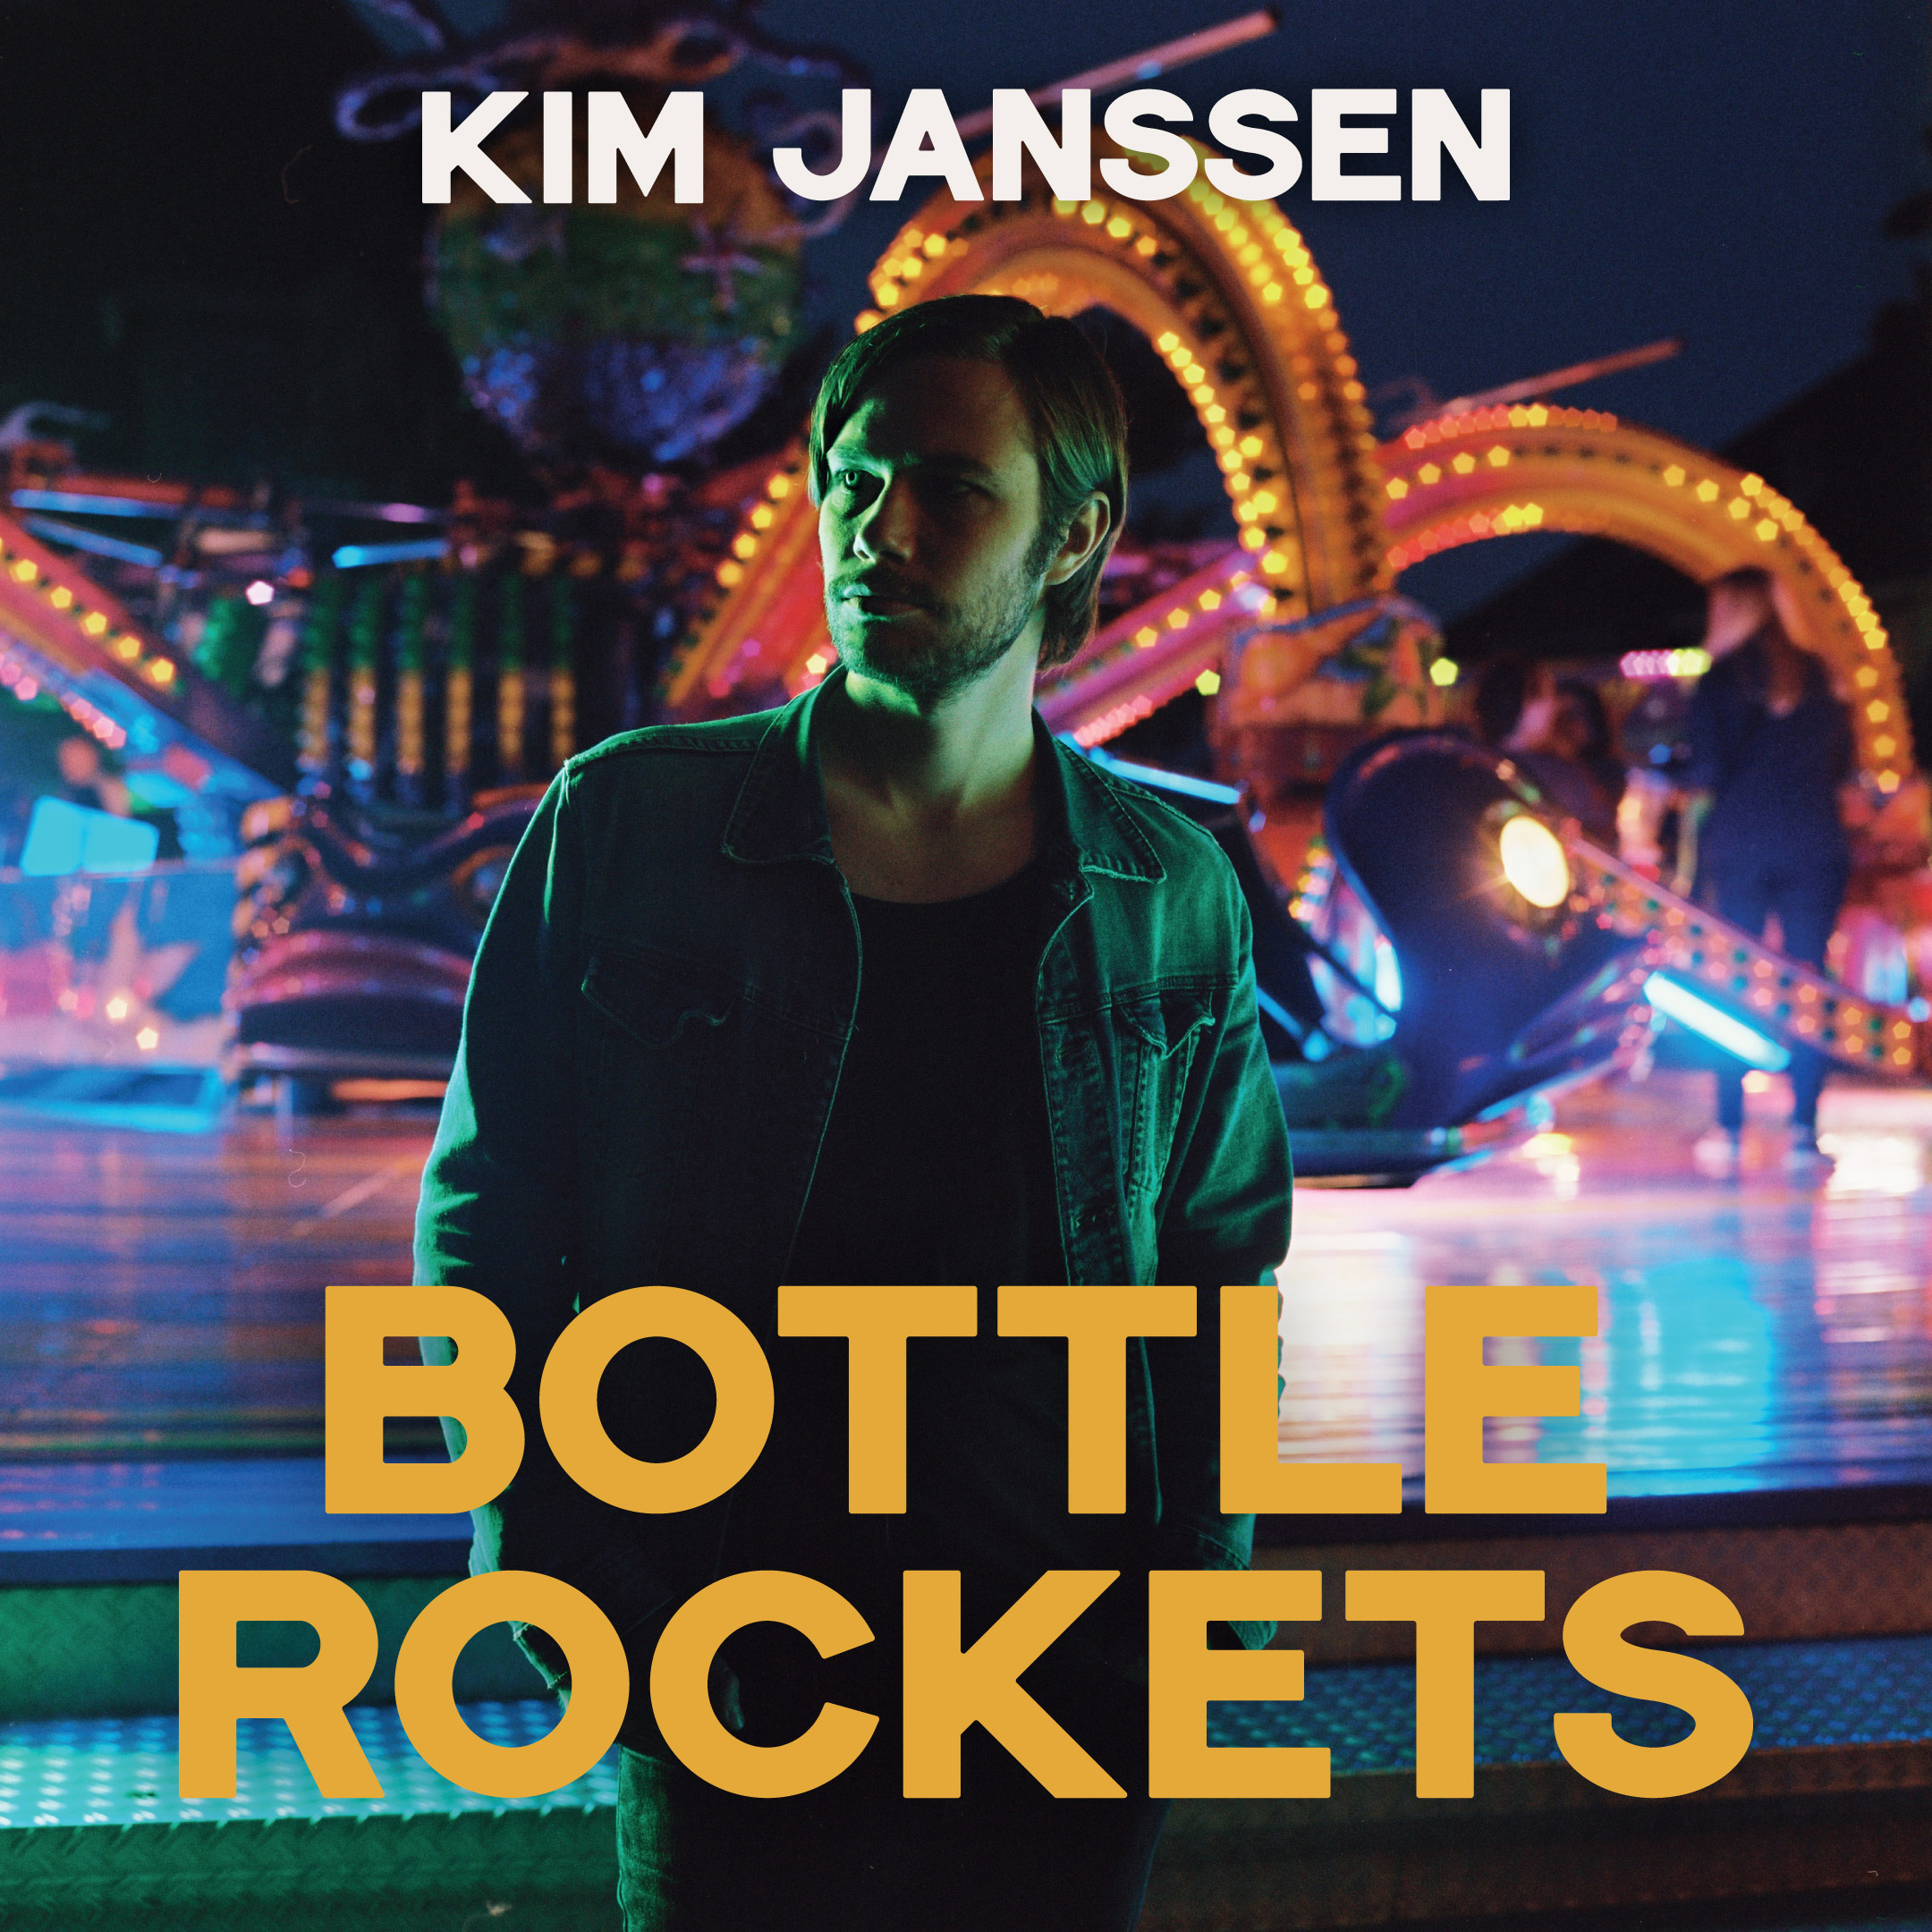 Kim Janssen - Bottle Rockets_cover